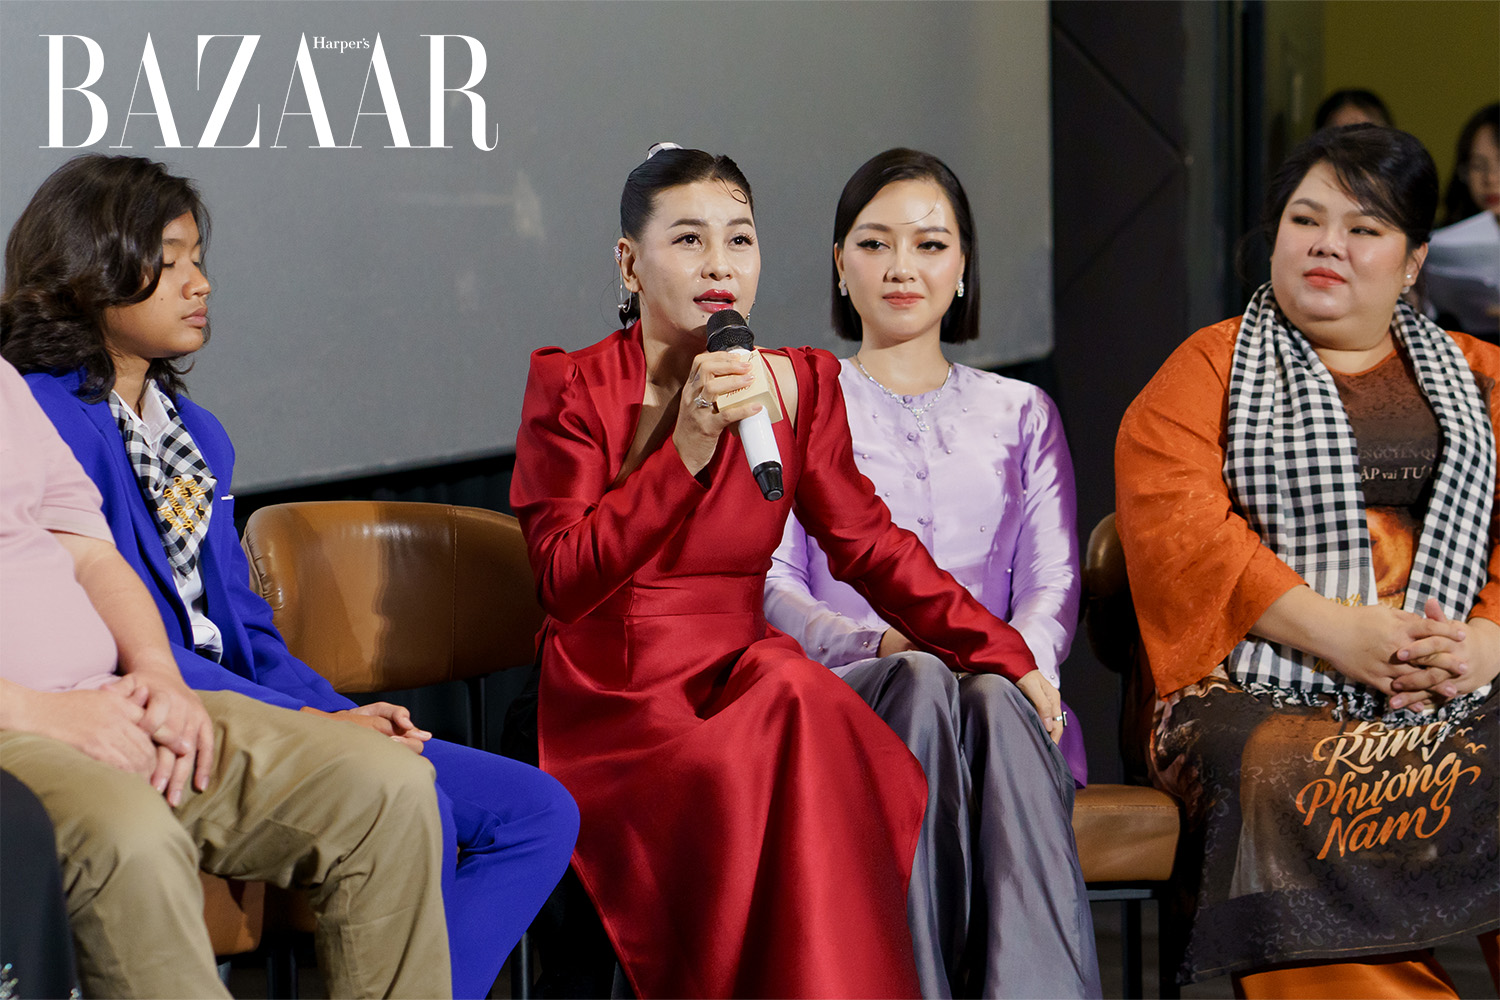 Harper's Bazaar_Hai thế hệ diễn viên hội ngộ tại premiere Đất Rừng Phương Nam_04